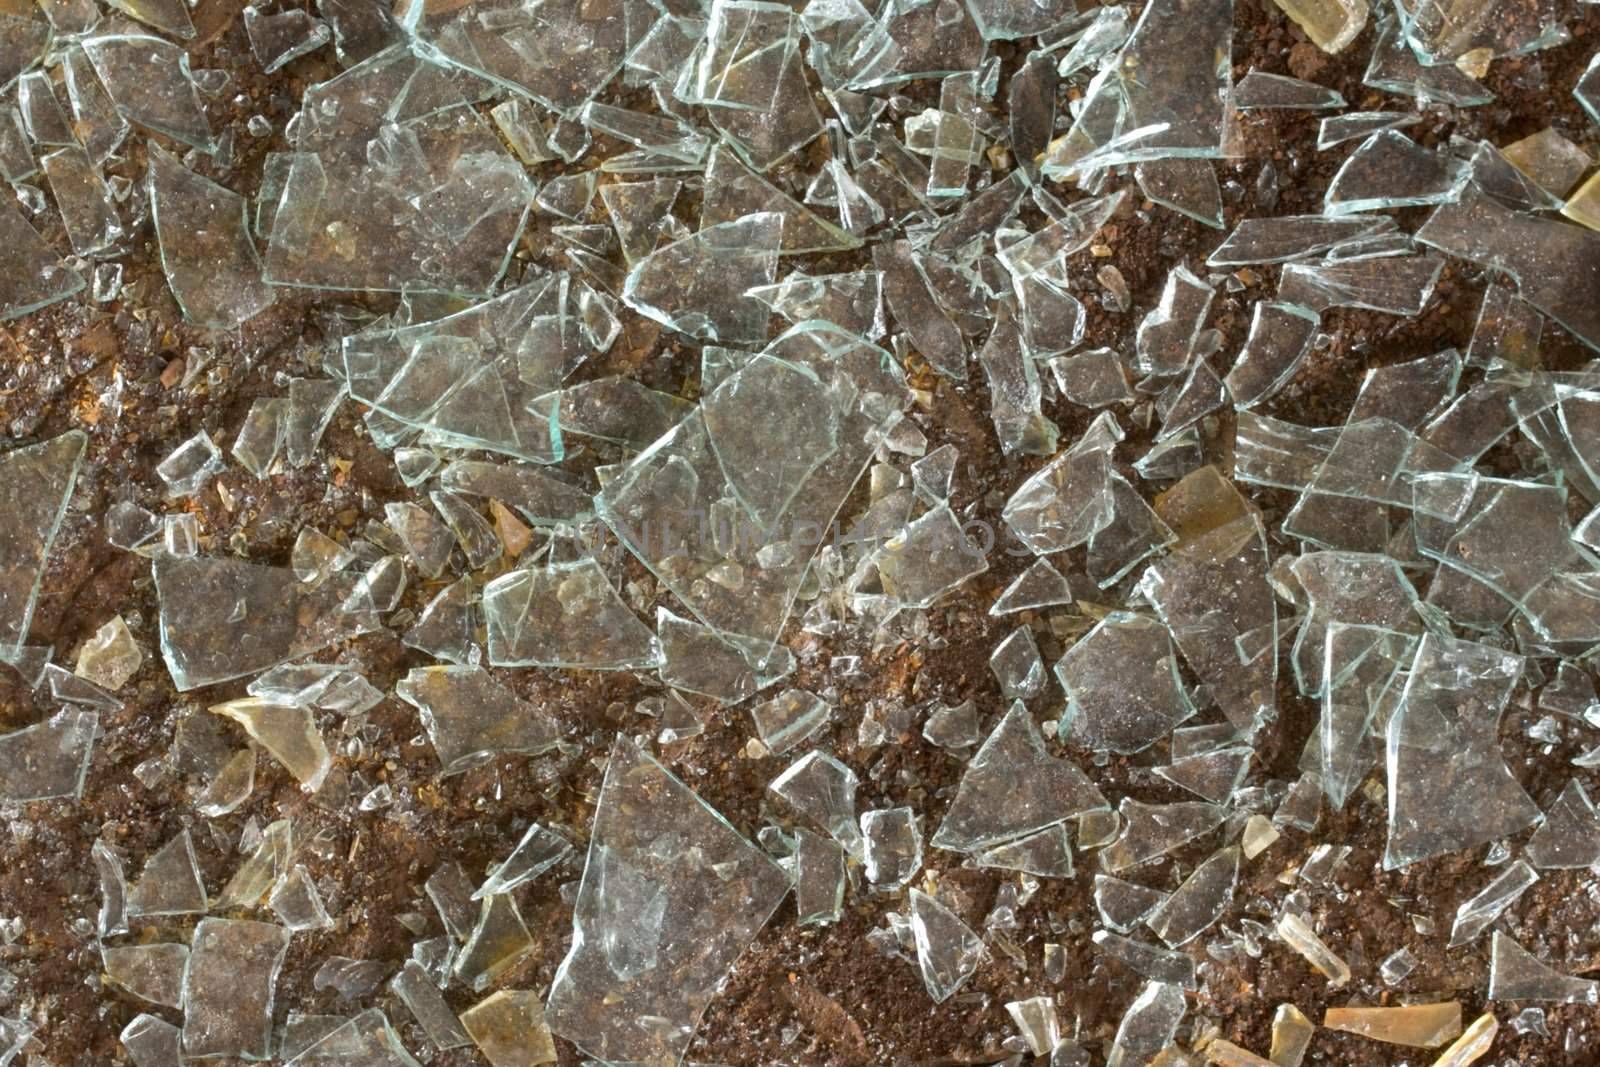 Floor and splinters of glass